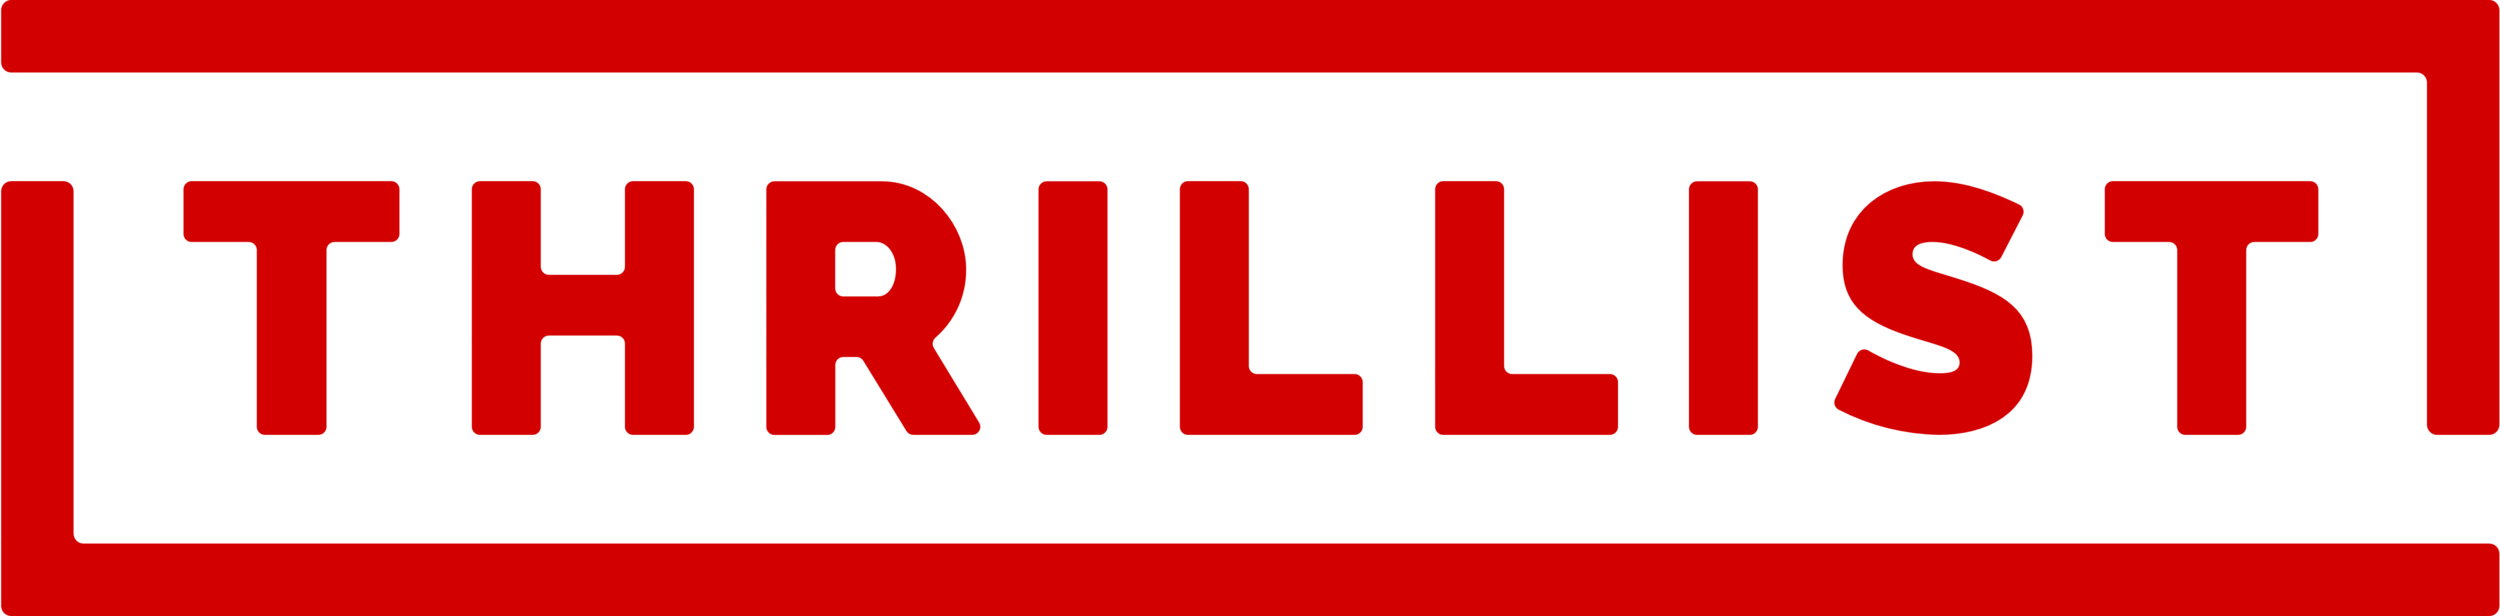 Thrillist_logo.png